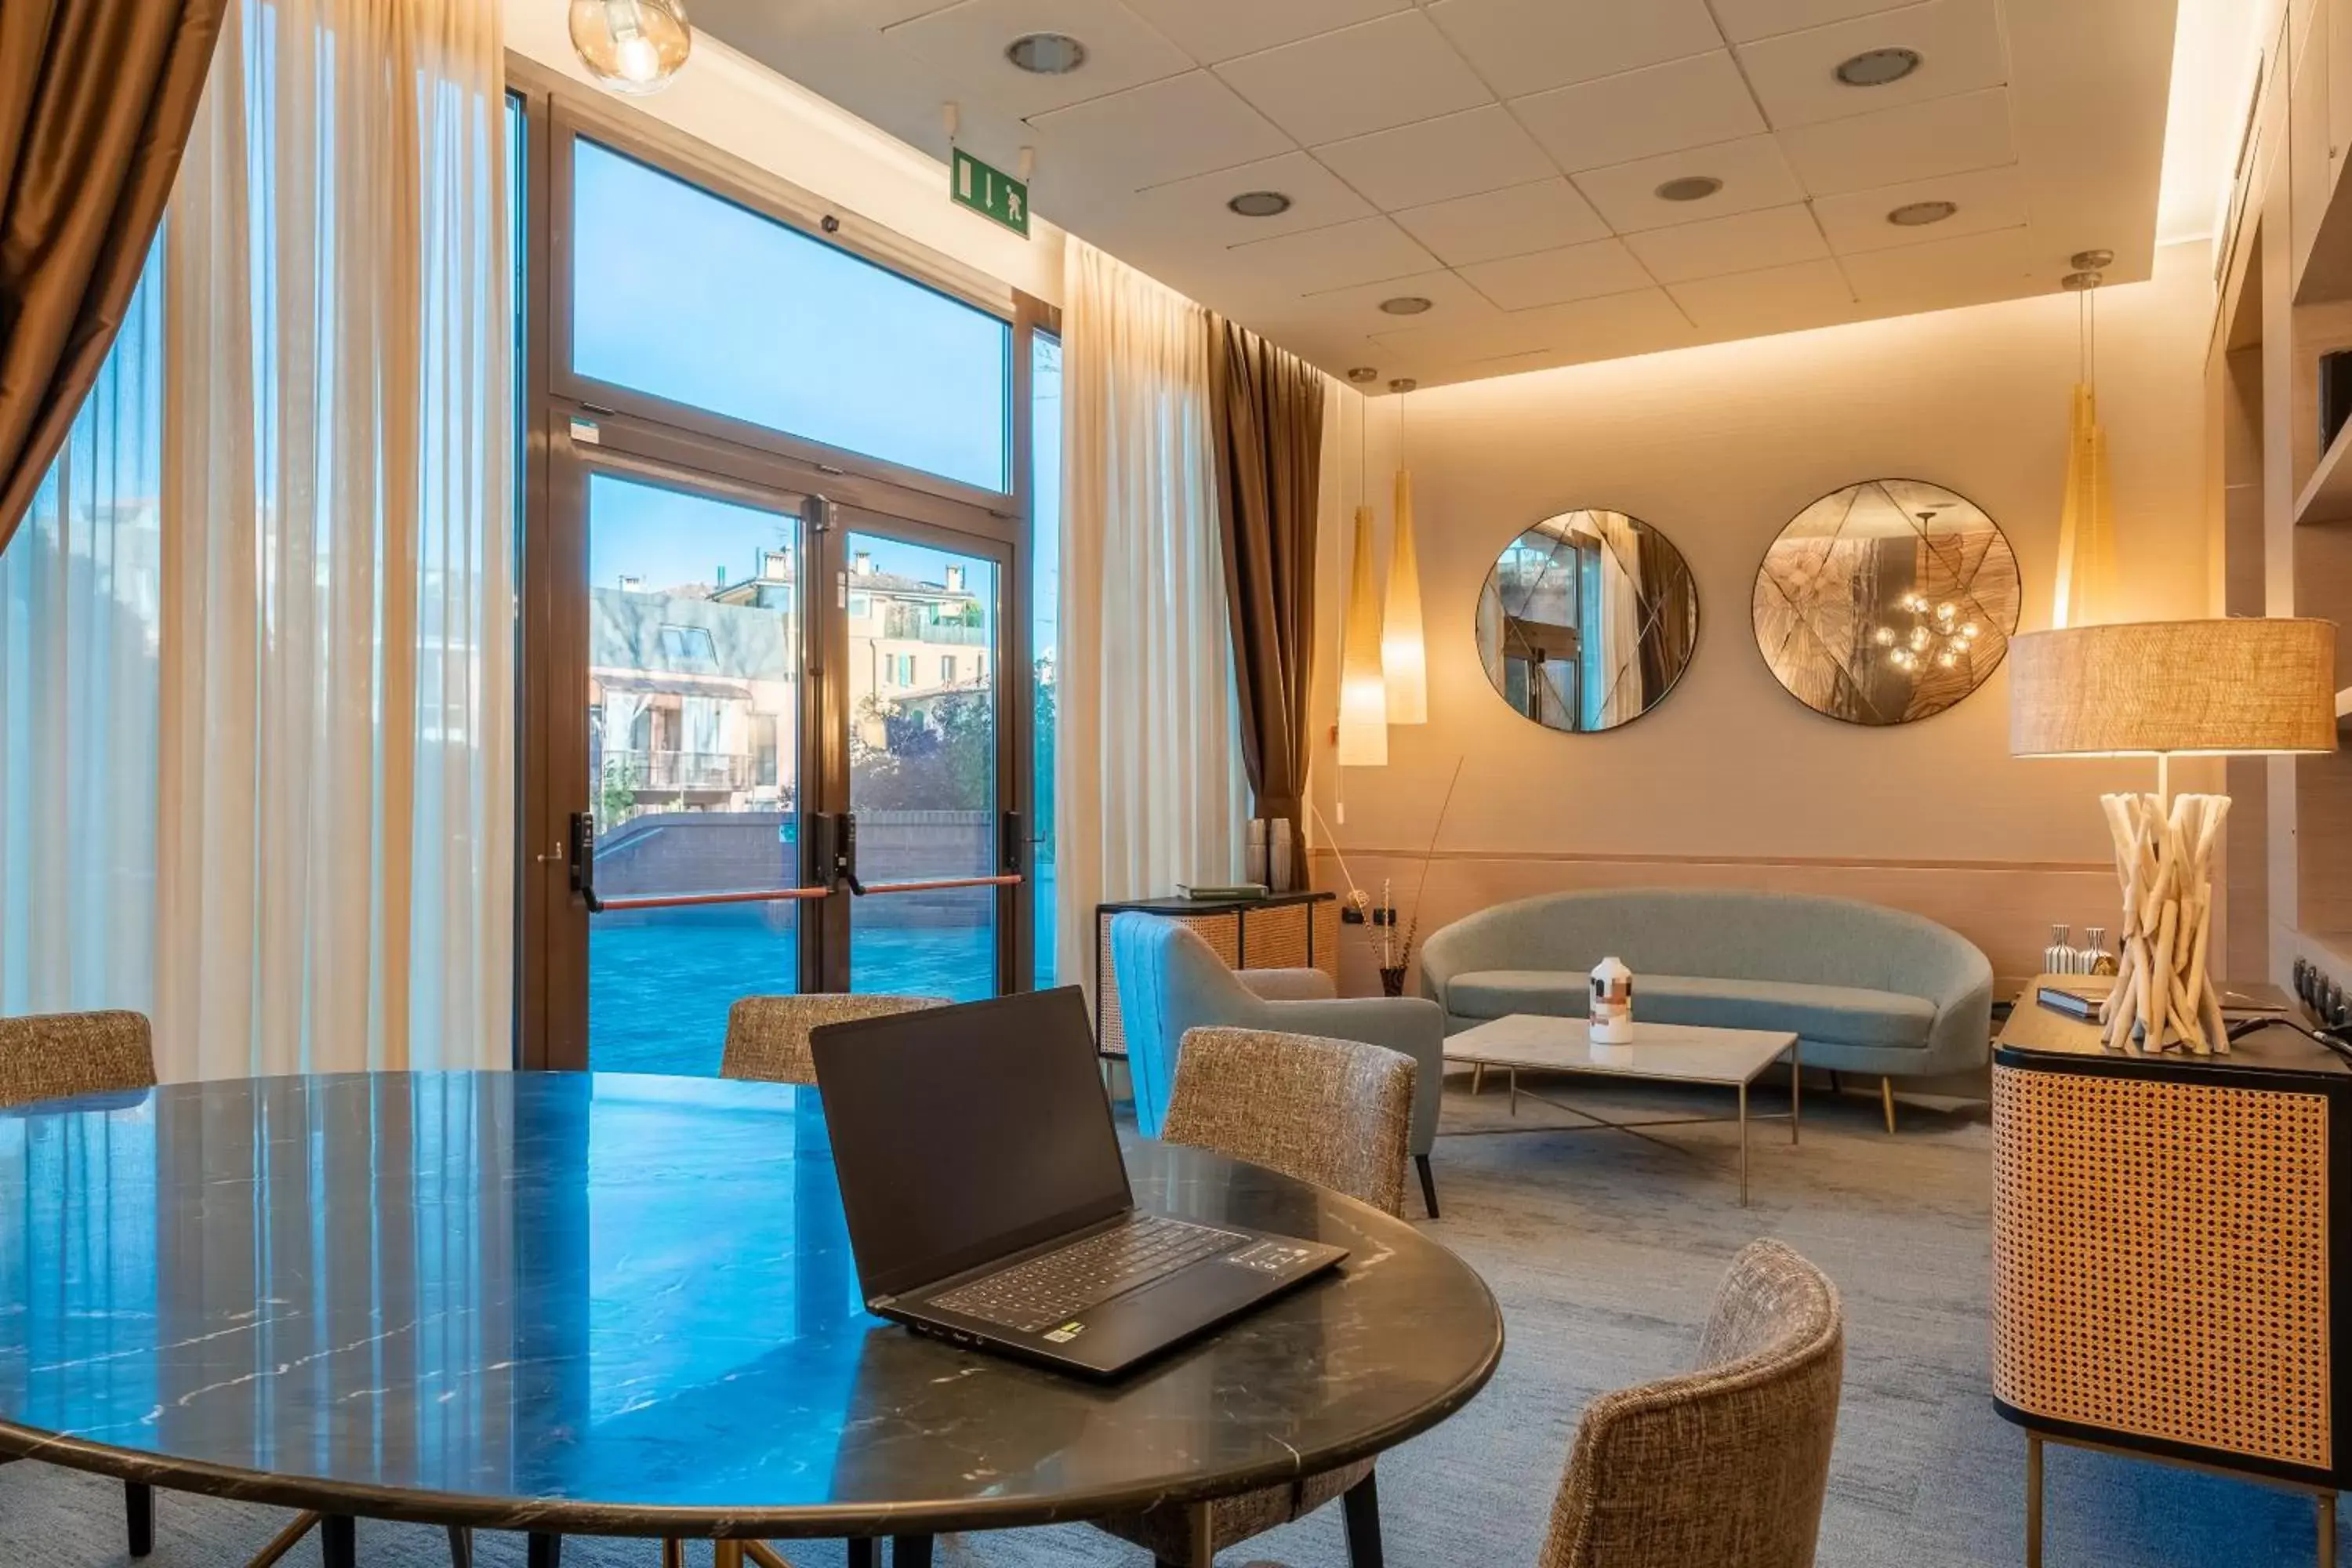 Lounge or bar, Seating Area in Aemilia Hotel Bologna